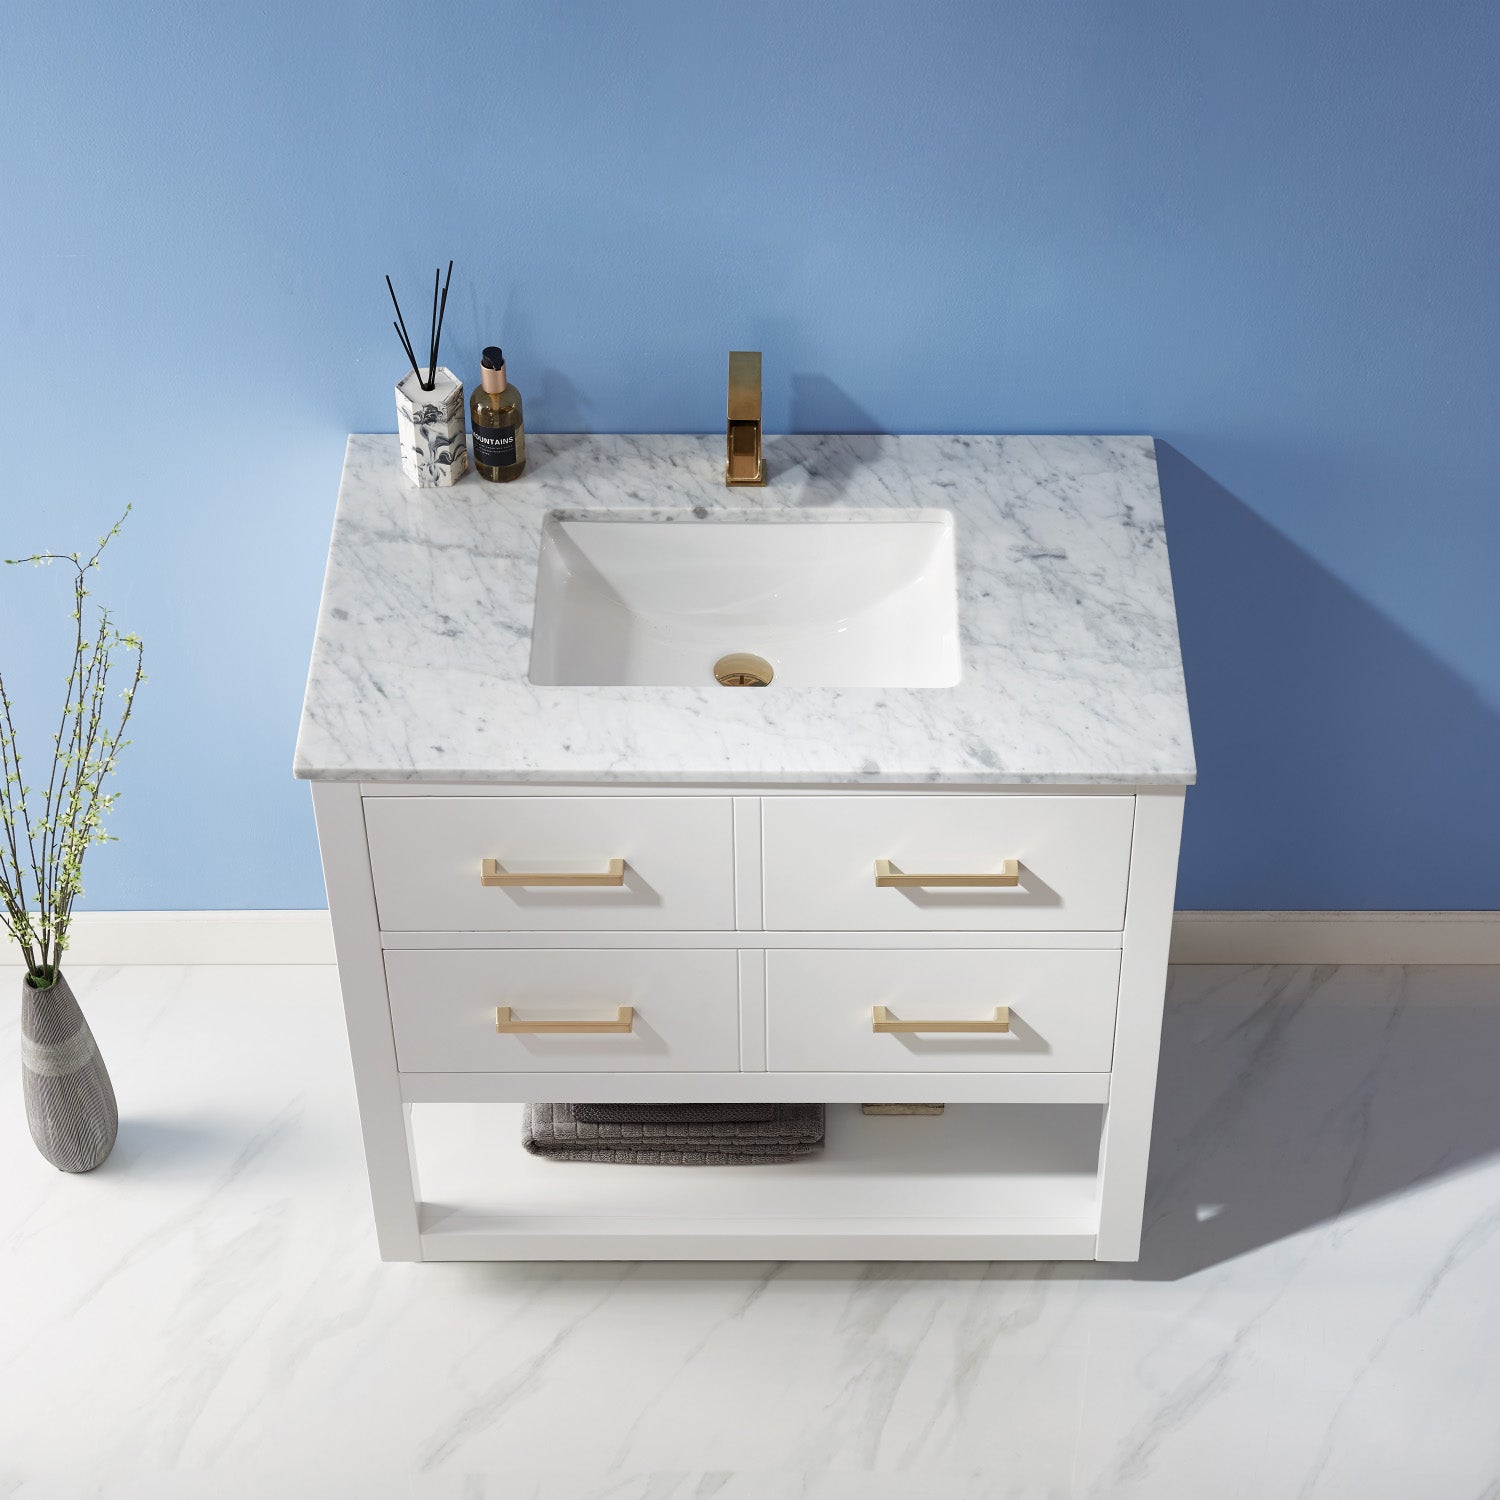 Remi 36" Single Bathroom Vanity Set in Marble Countertop